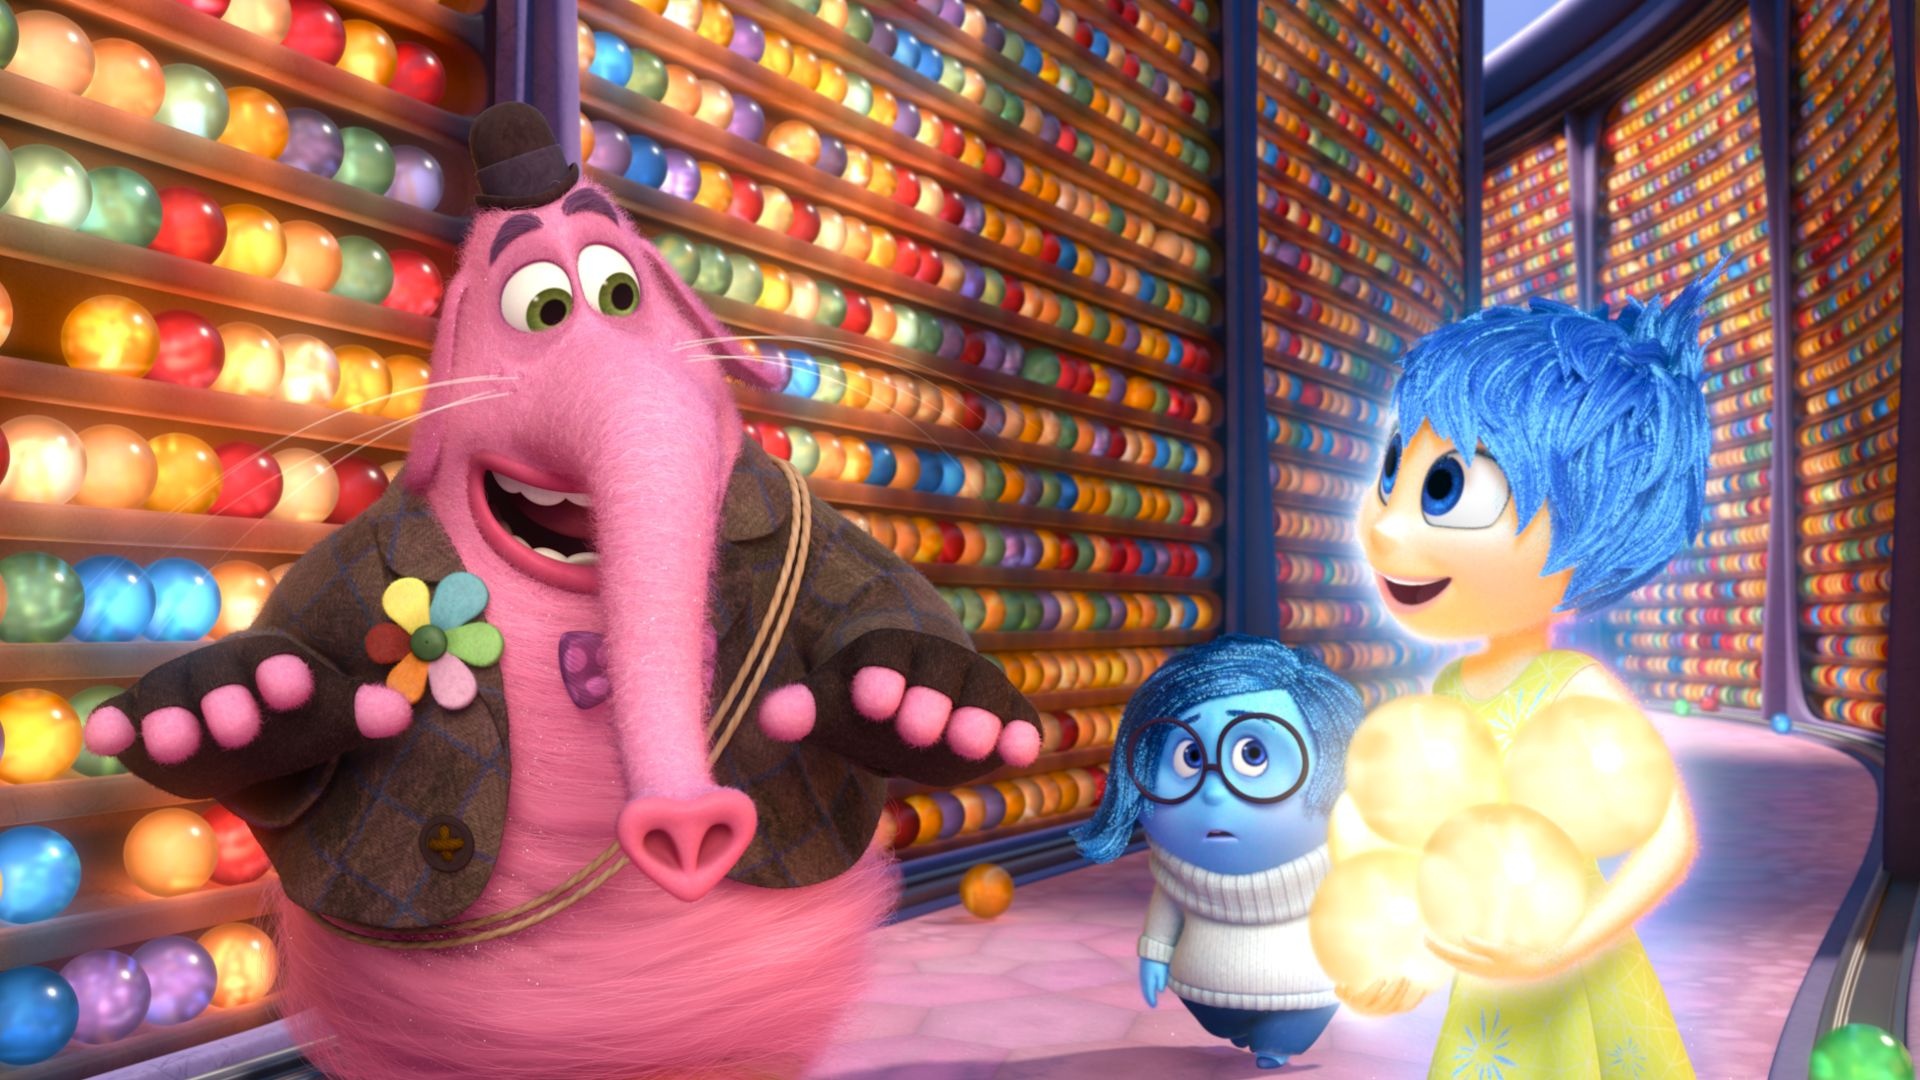 Inside Out animation, Pixar's tear-jerker, Heartwarming story, Emotional journey, 1920x1080 Full HD Desktop